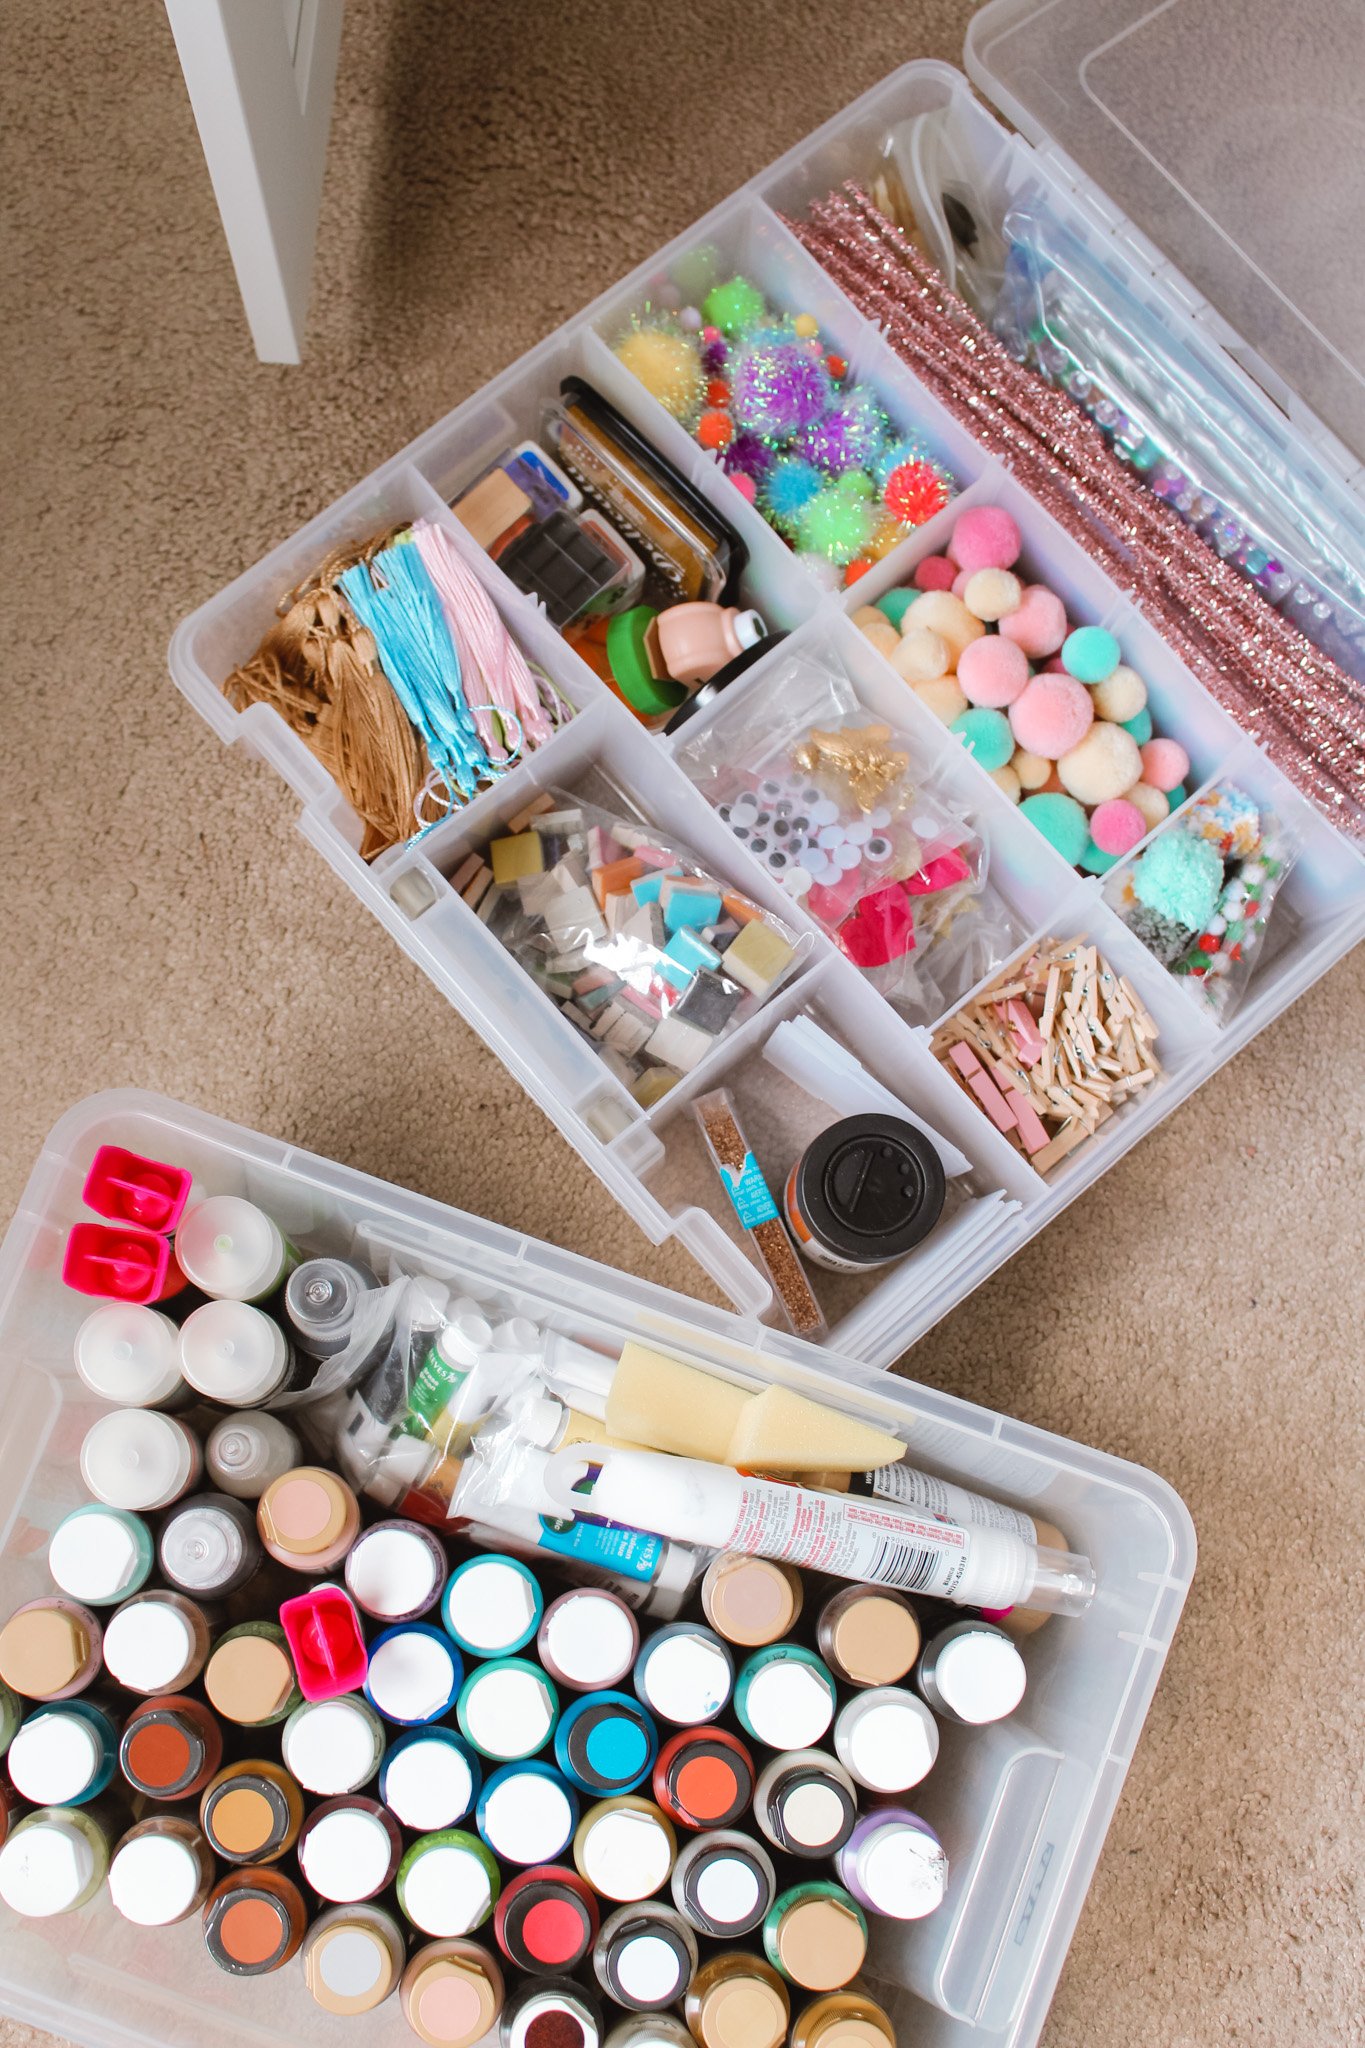 10 brilliant ways to organize your craft supplies